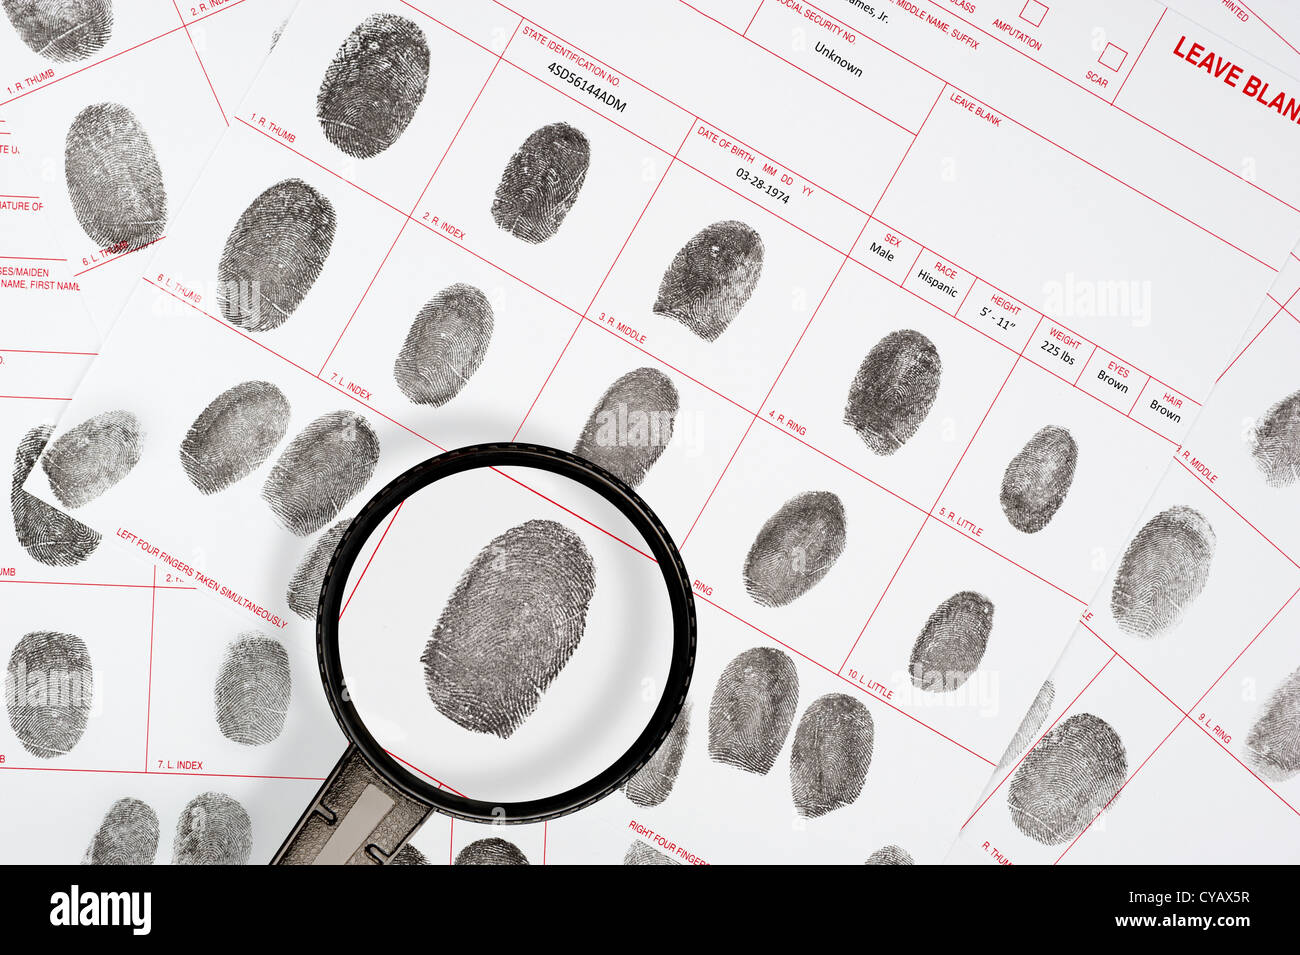 Un inspecteur judiciaire ressemble à un suspect sur les fichiers d'empreintes digitales juridique detective. Banque D'Images